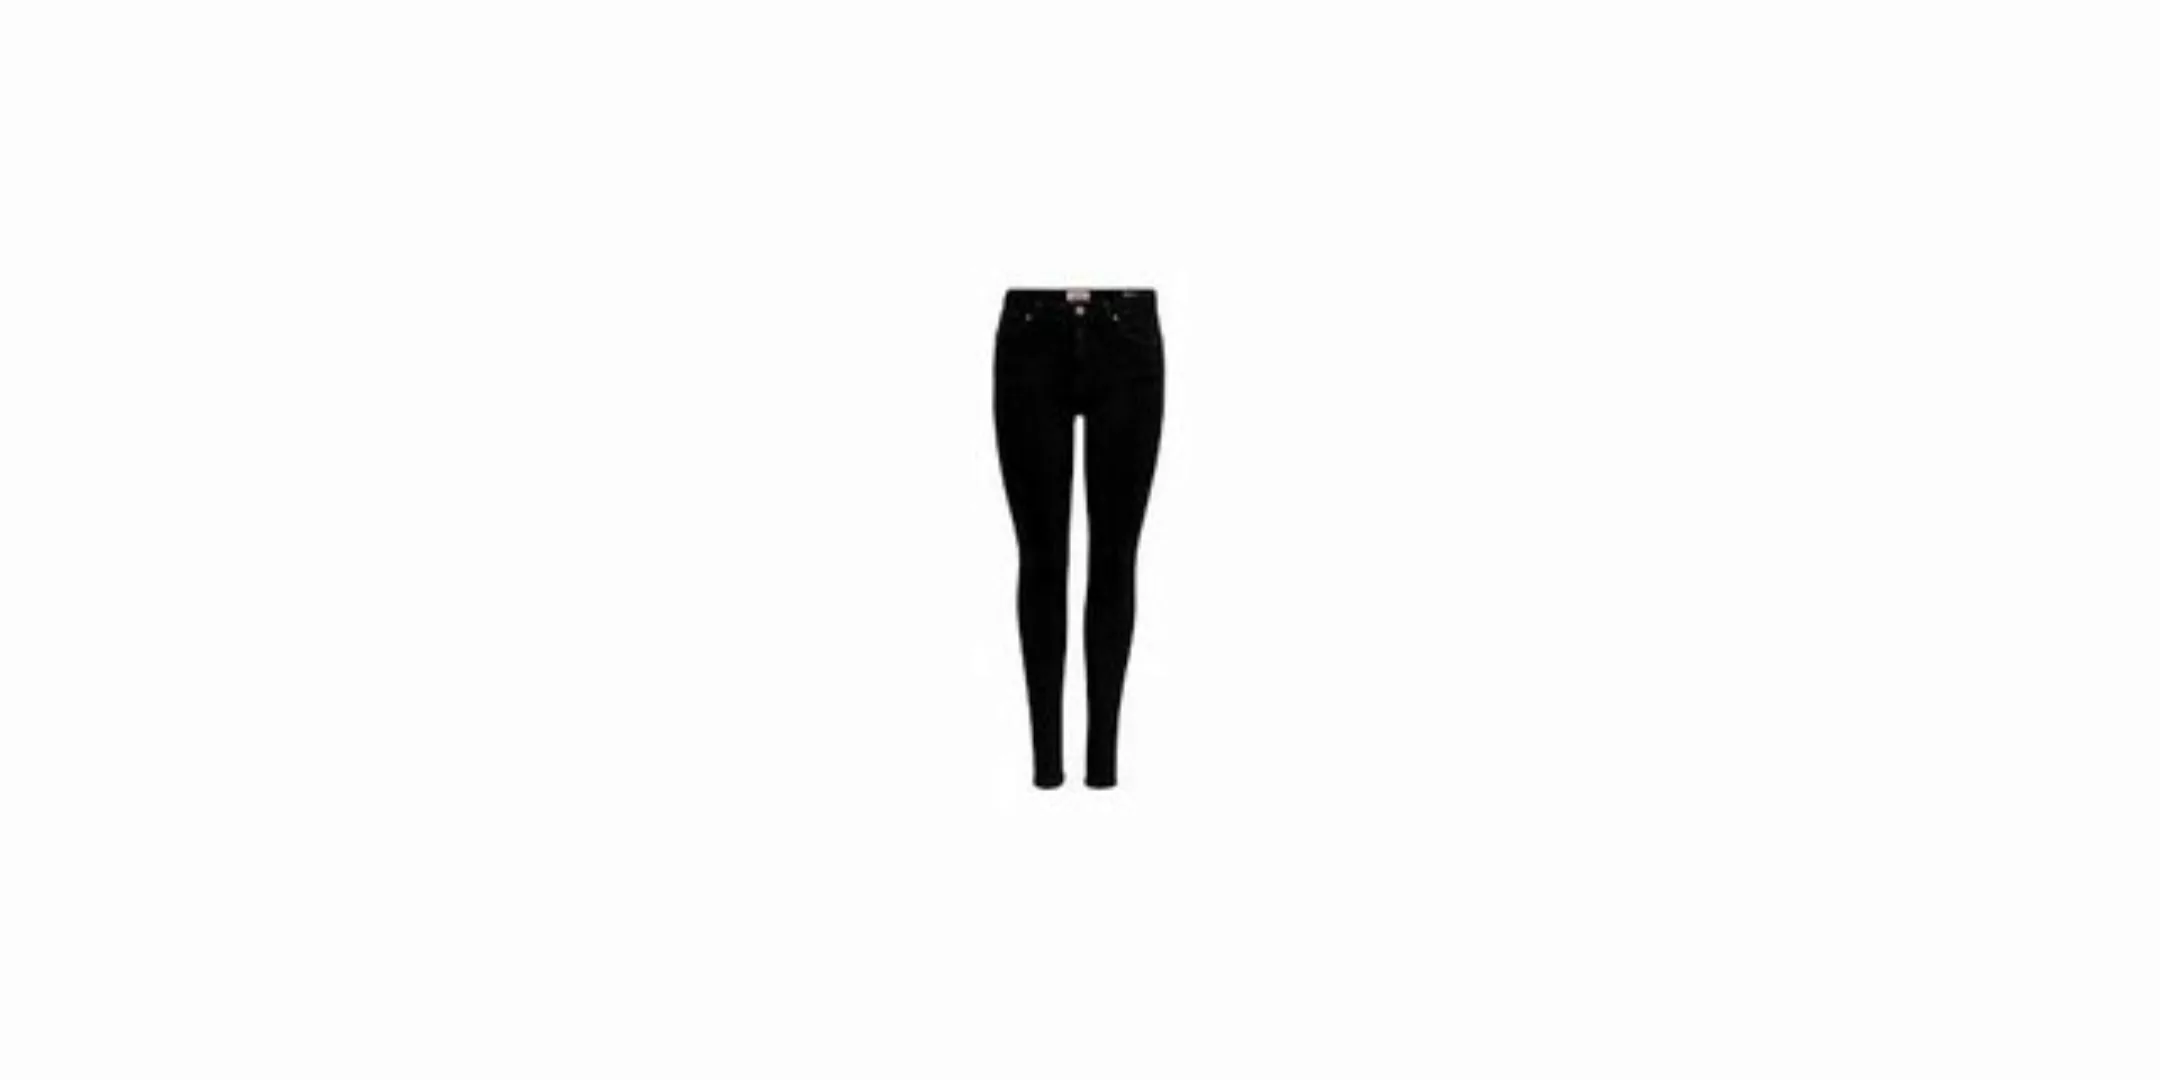 Only Damen Jeans ONLPOWER MID PUSH UP REA3659 - Skinny Fit - Schwarz - Blac günstig online kaufen